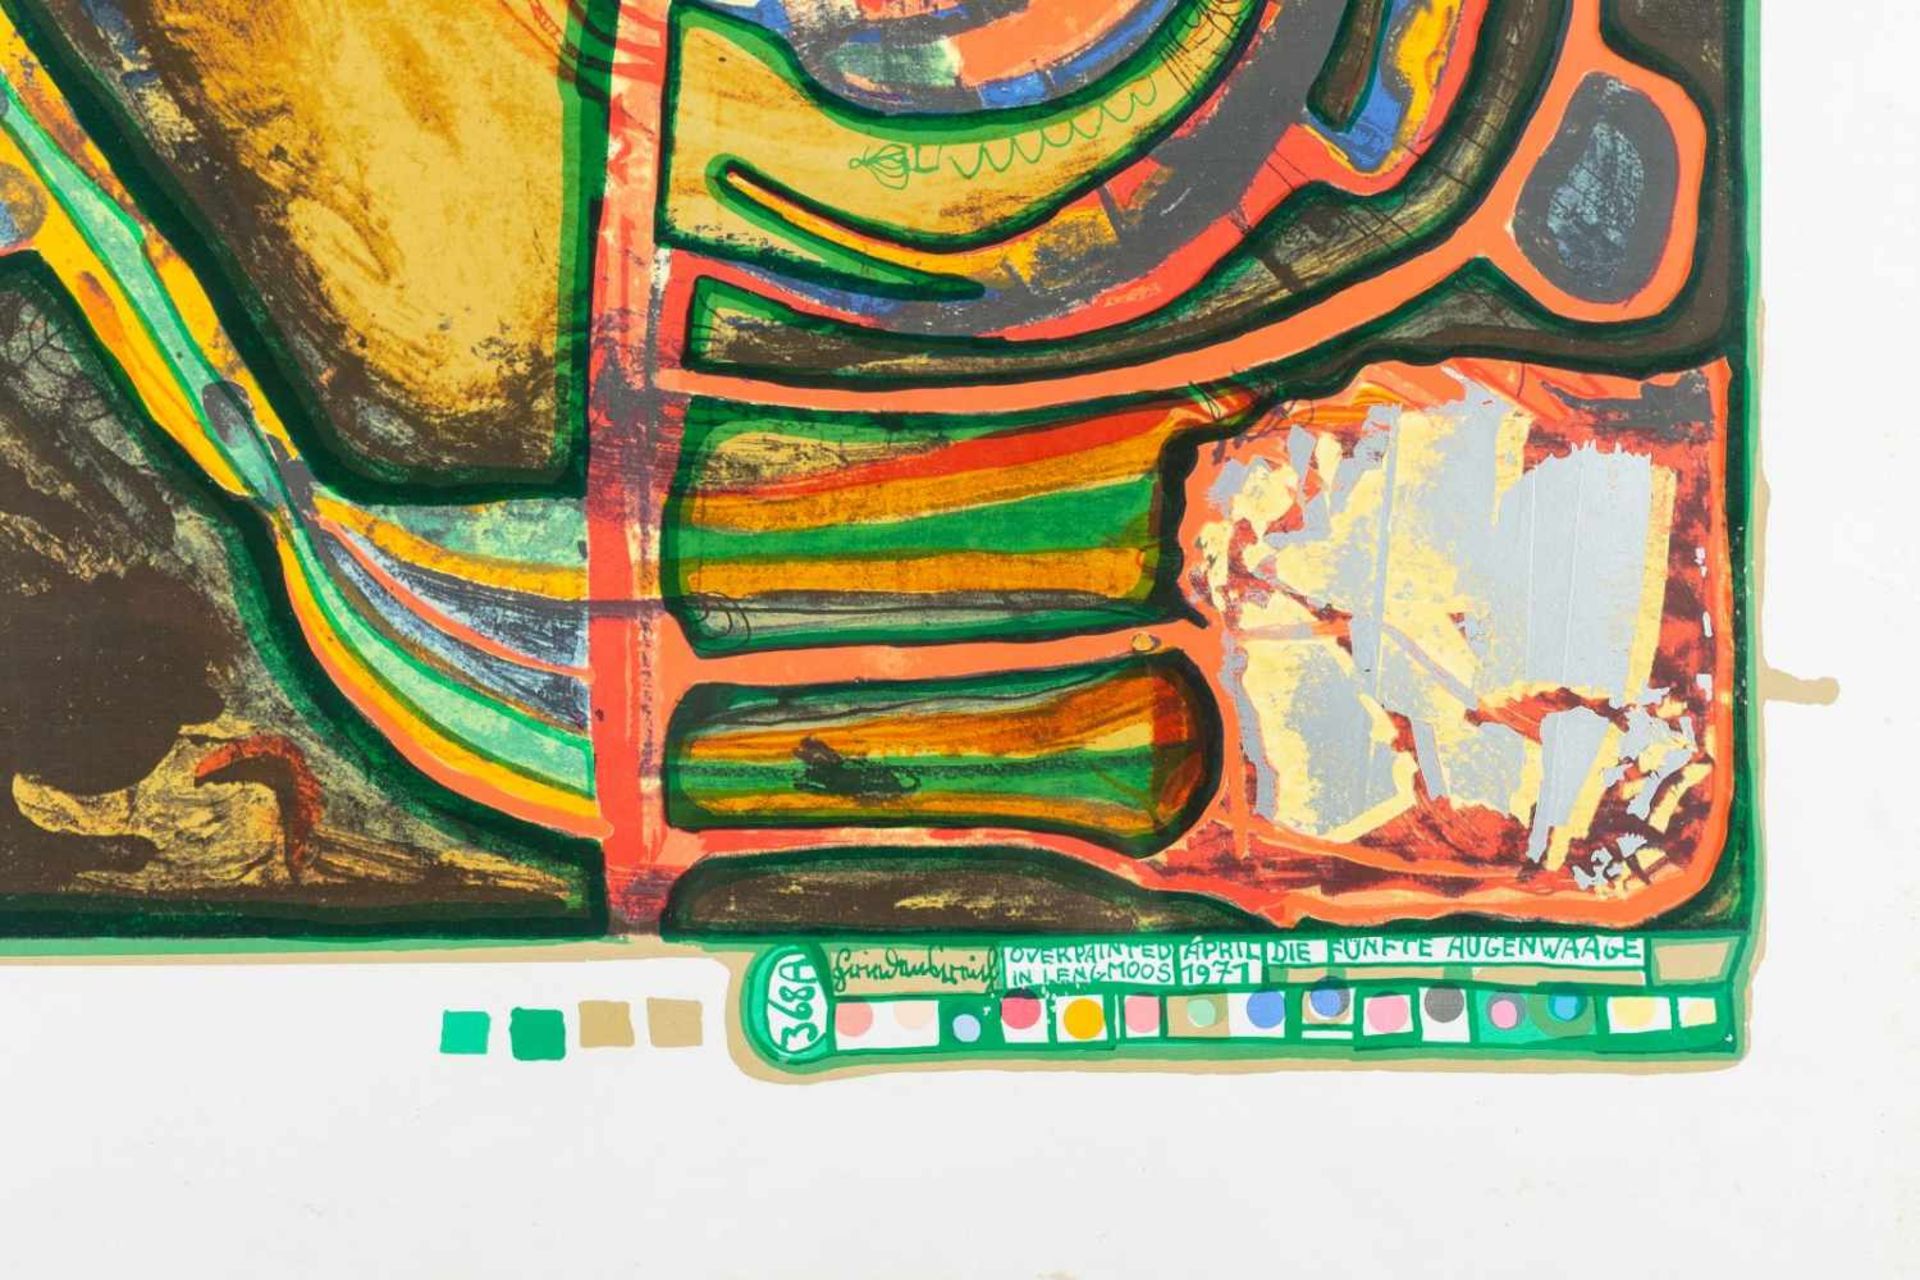 Friedensreich Hundertwasser, "Die Fünfte Augenwaage", *"Die Fünfte Augenwaage", Druckprobe von - Bild 2 aus 2